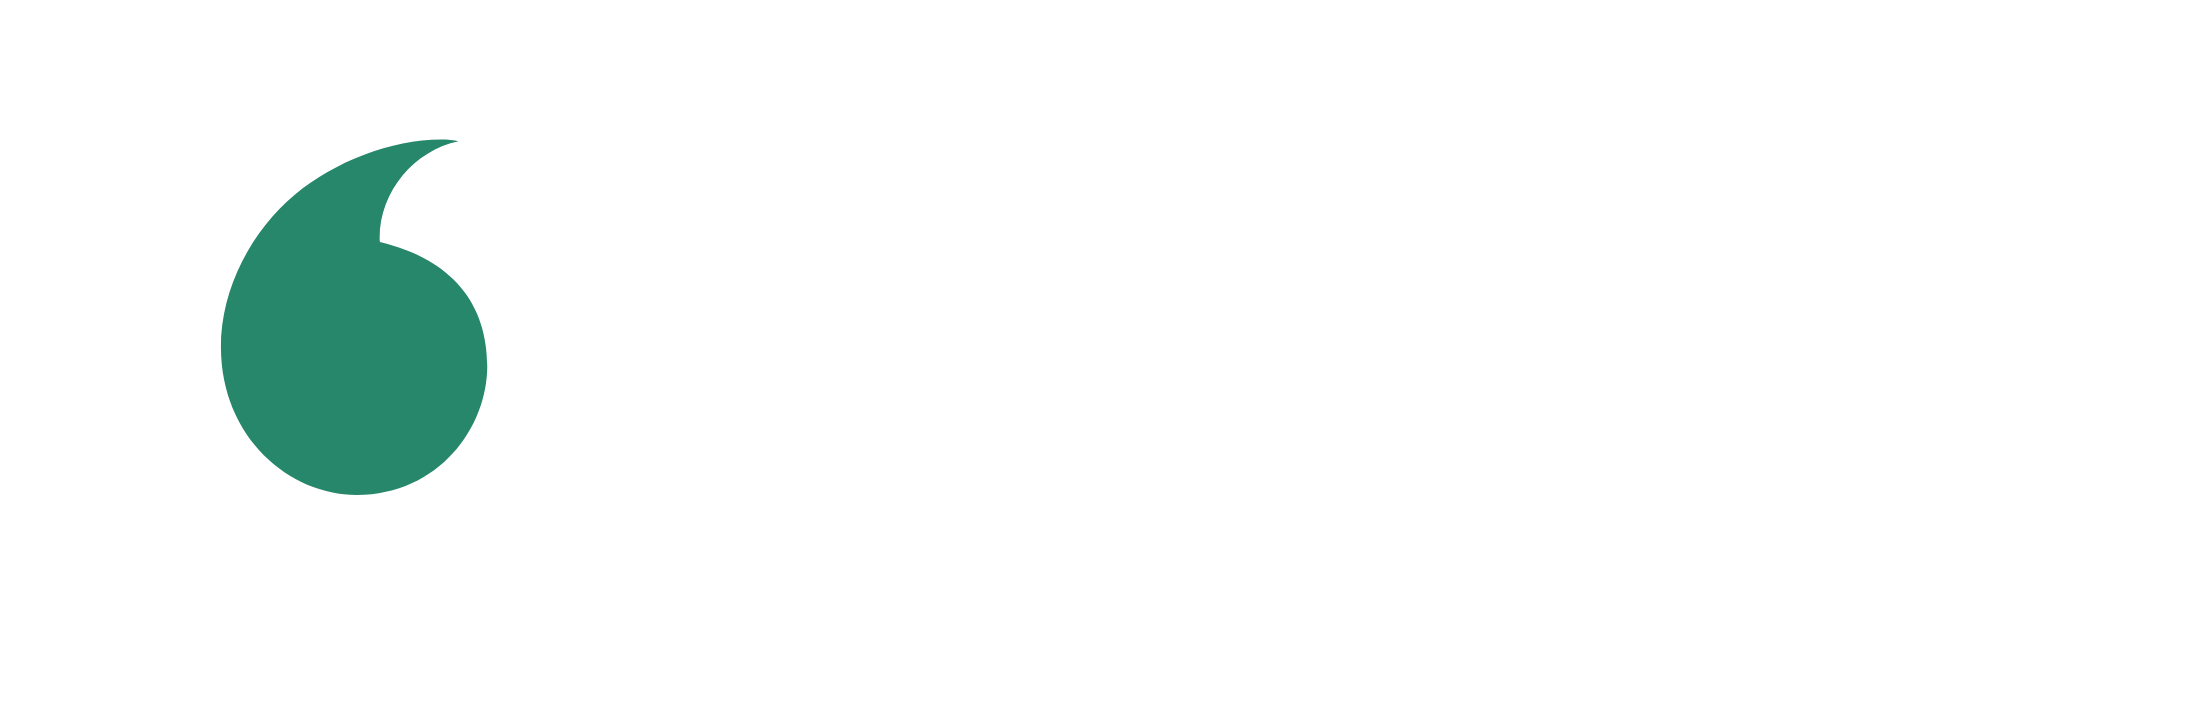 Logotipo de la empresa Vodafone con una marca de texto blanca y verde en un círculo y el nombre de la marca al lado.